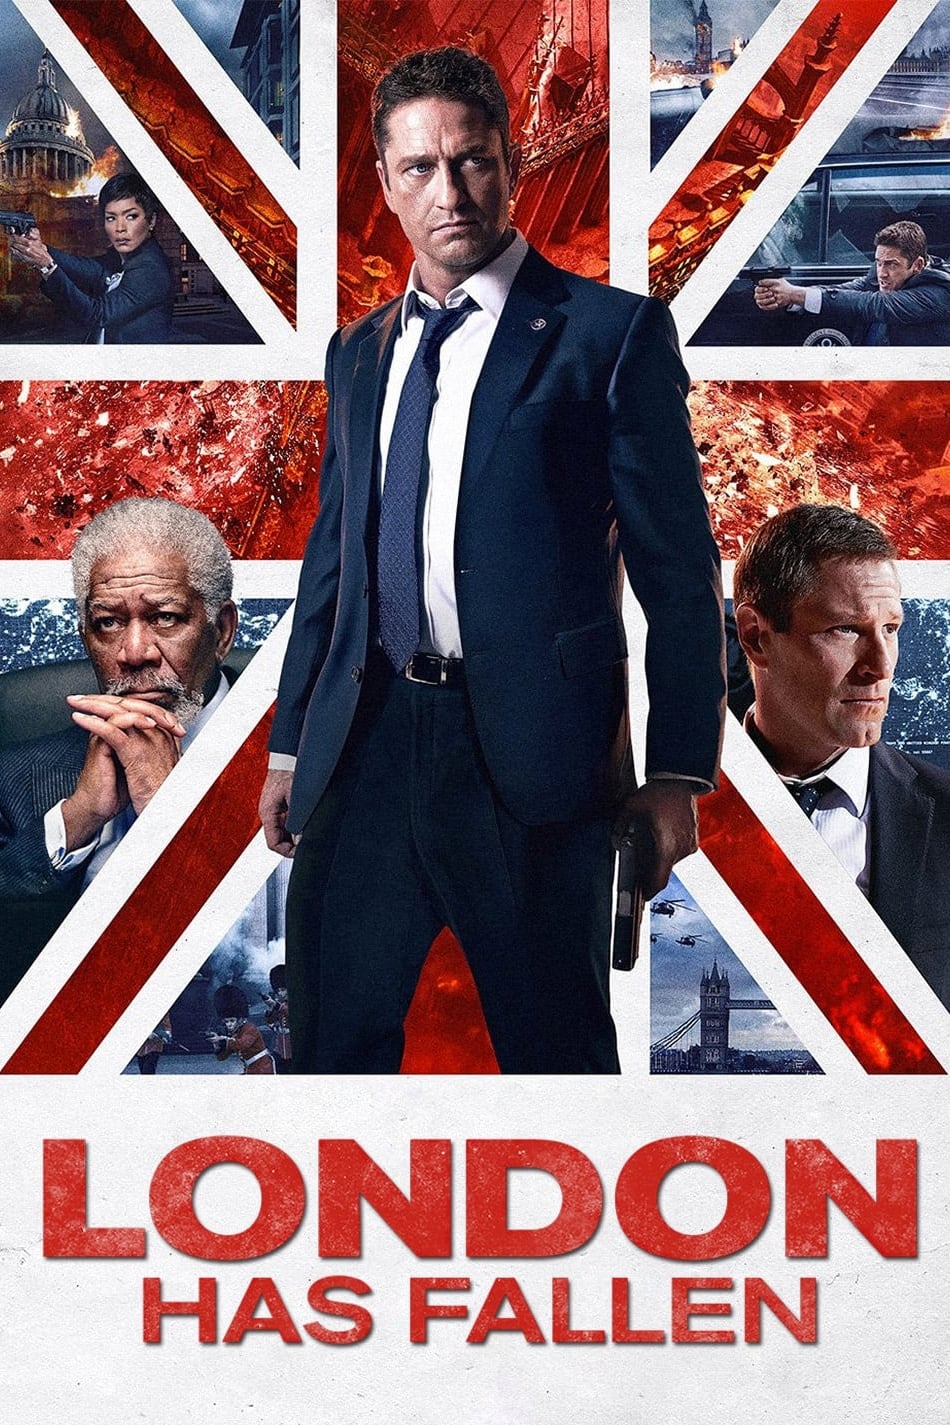 TOP - London Has Fallen (2016)